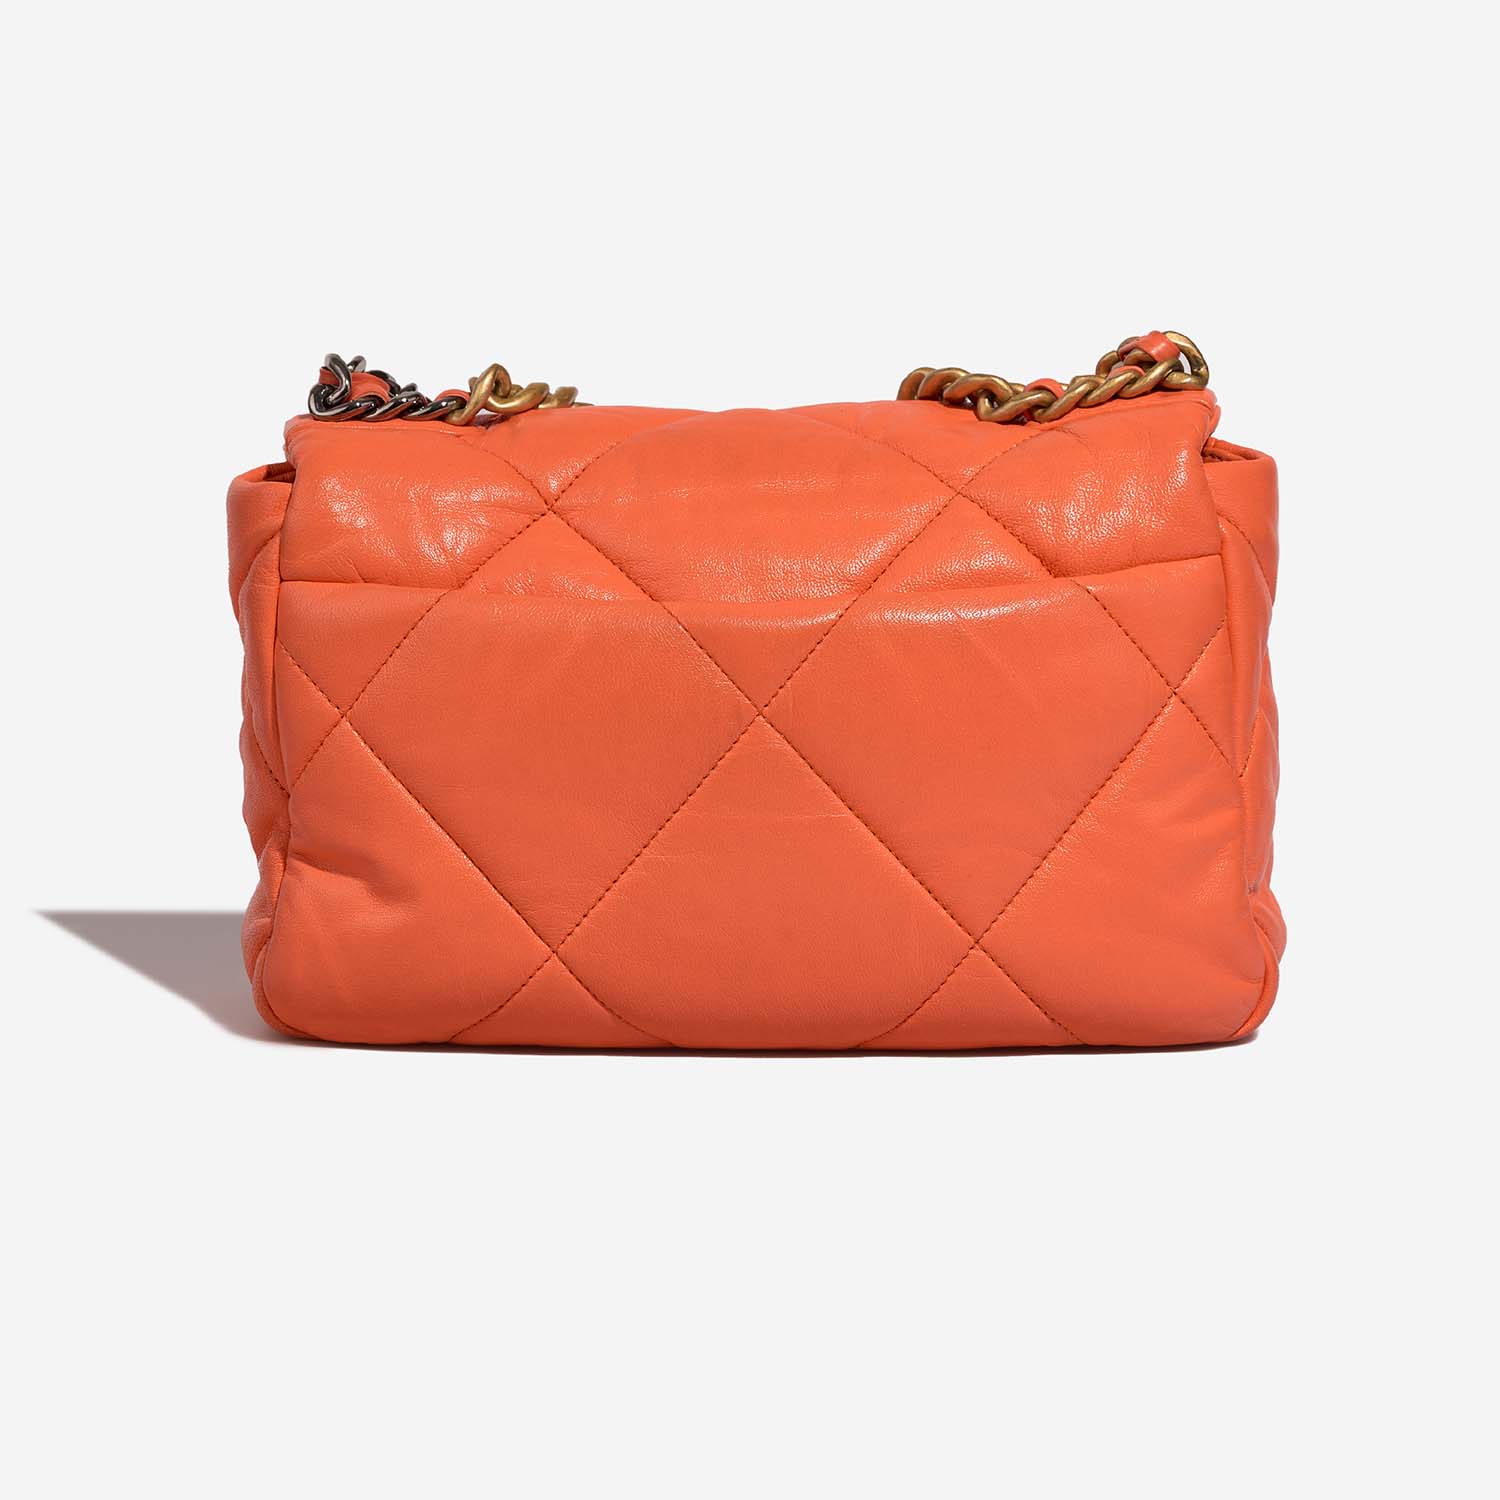 Chanel 19 FlapBag Orange Back | Verkaufen Sie Ihre Designer-Tasche auf Saclab.com